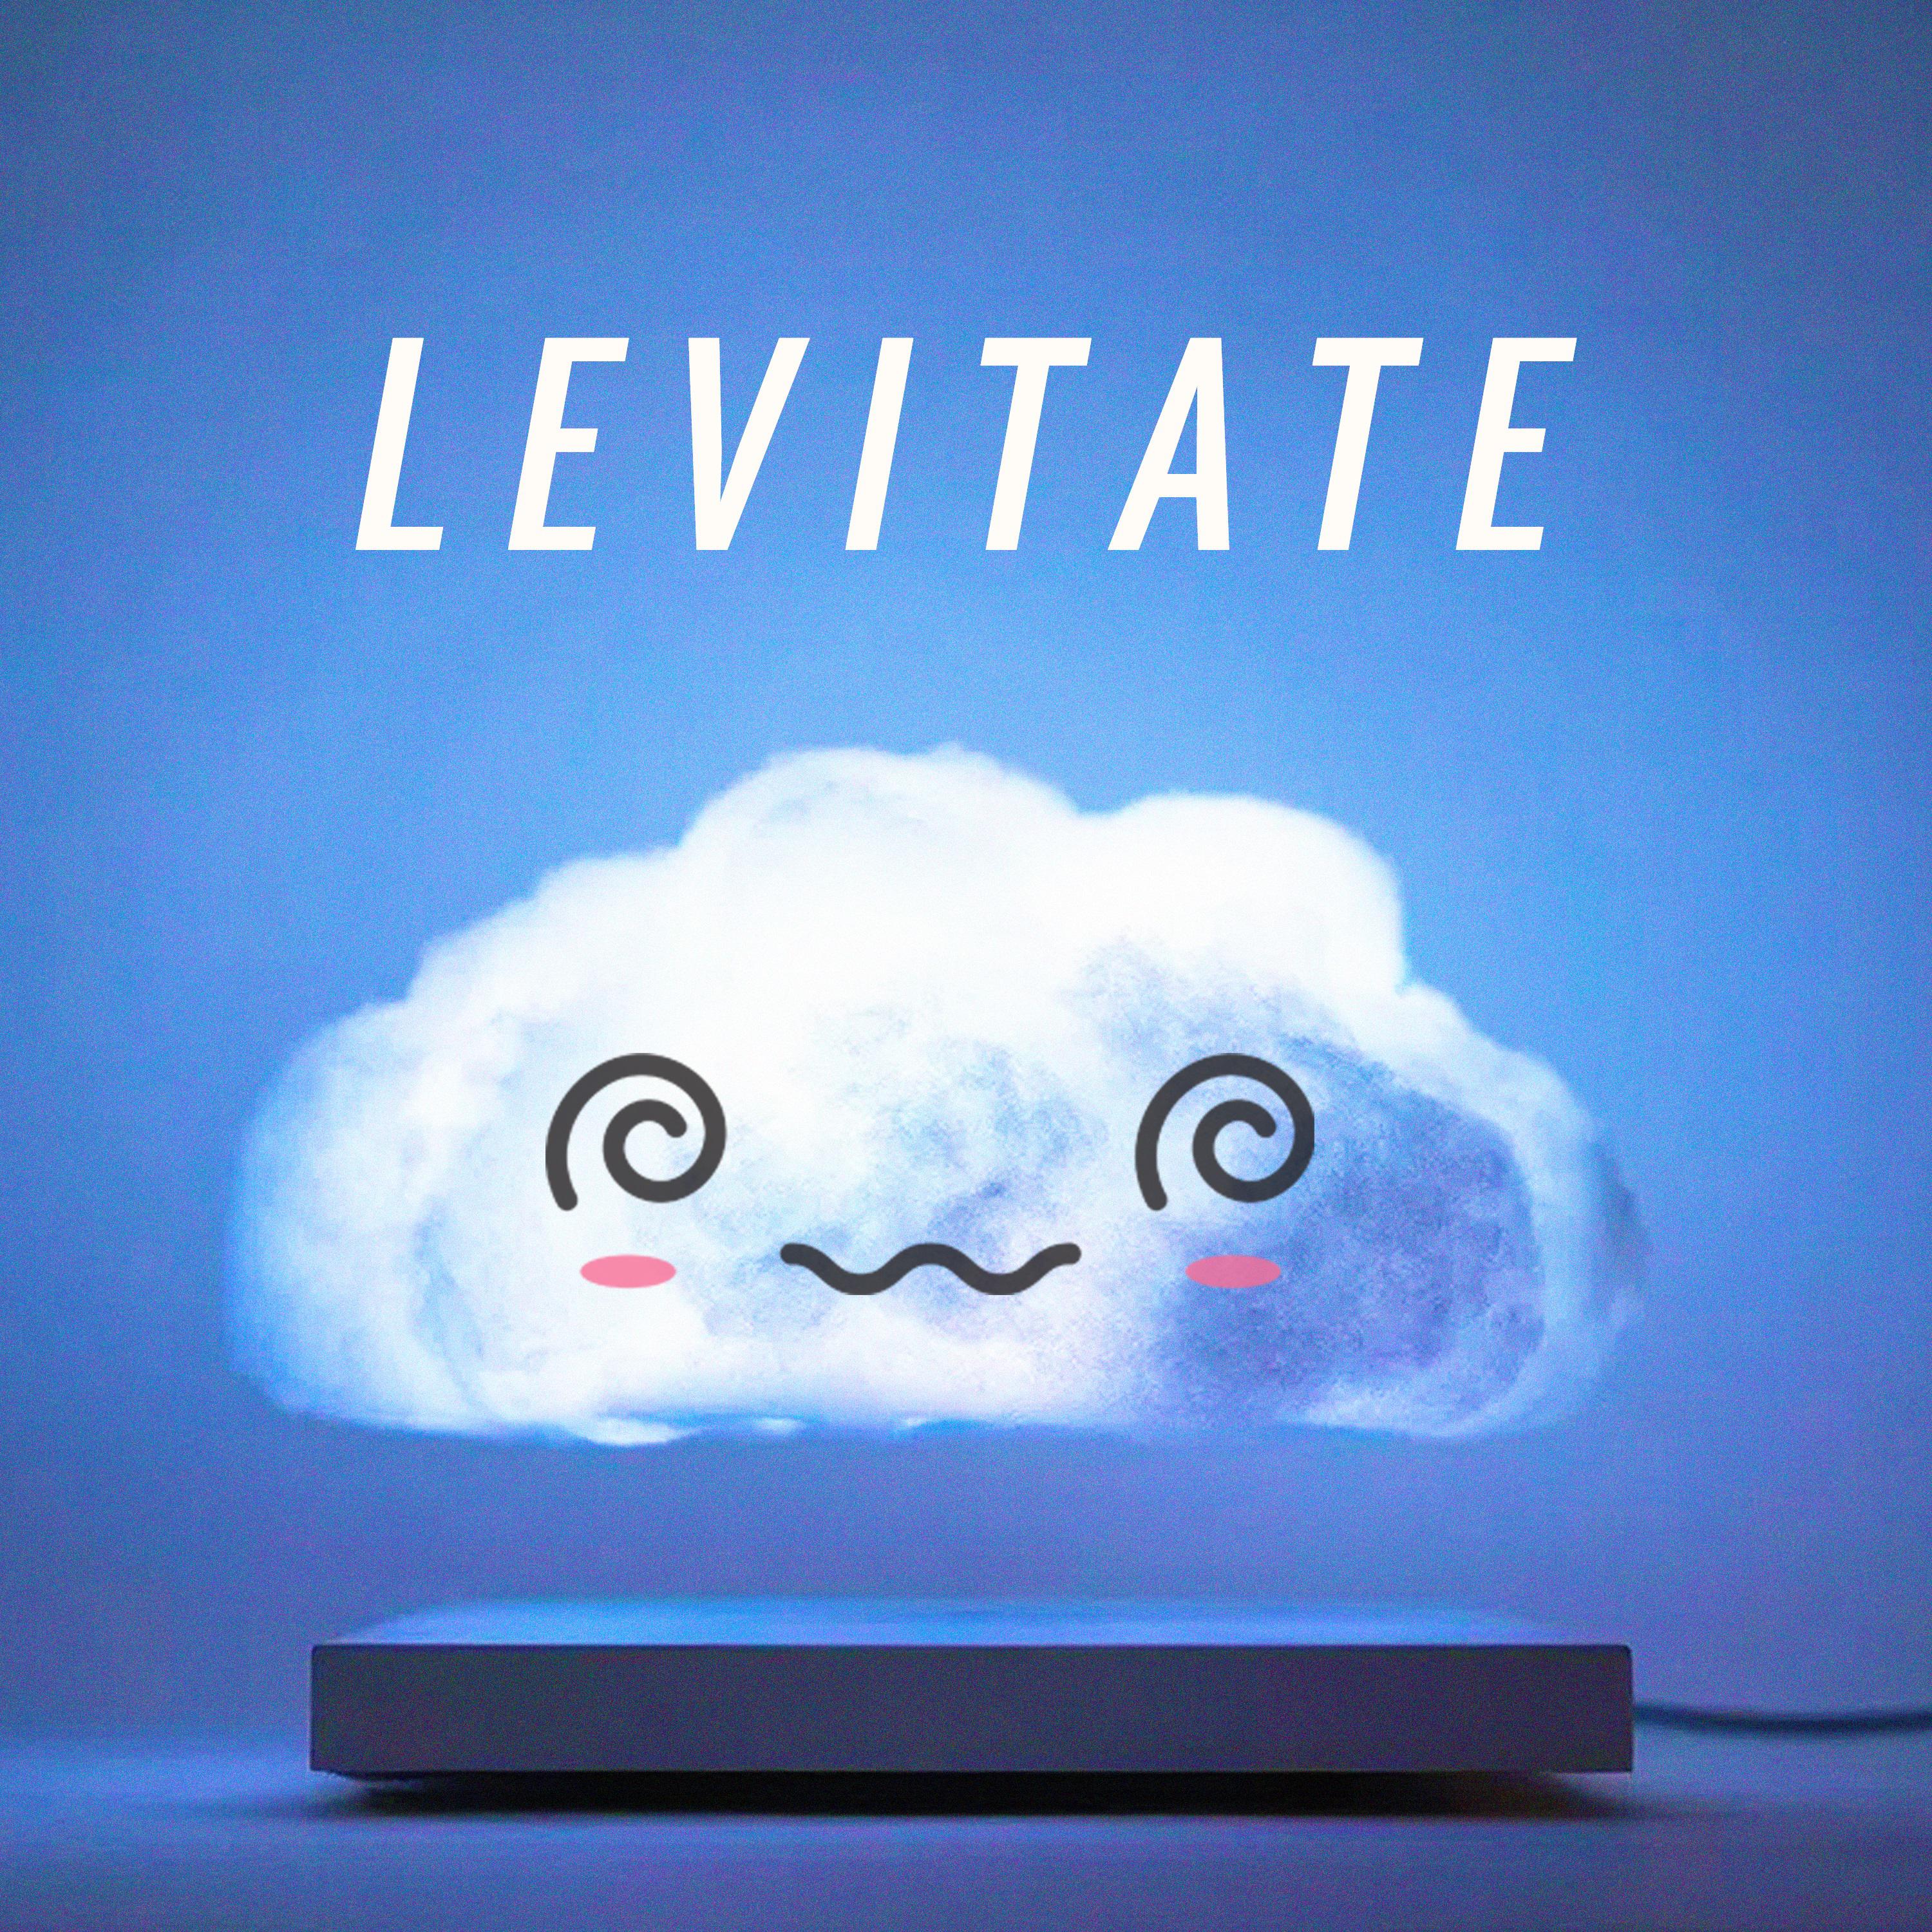 Levitate tof Remix